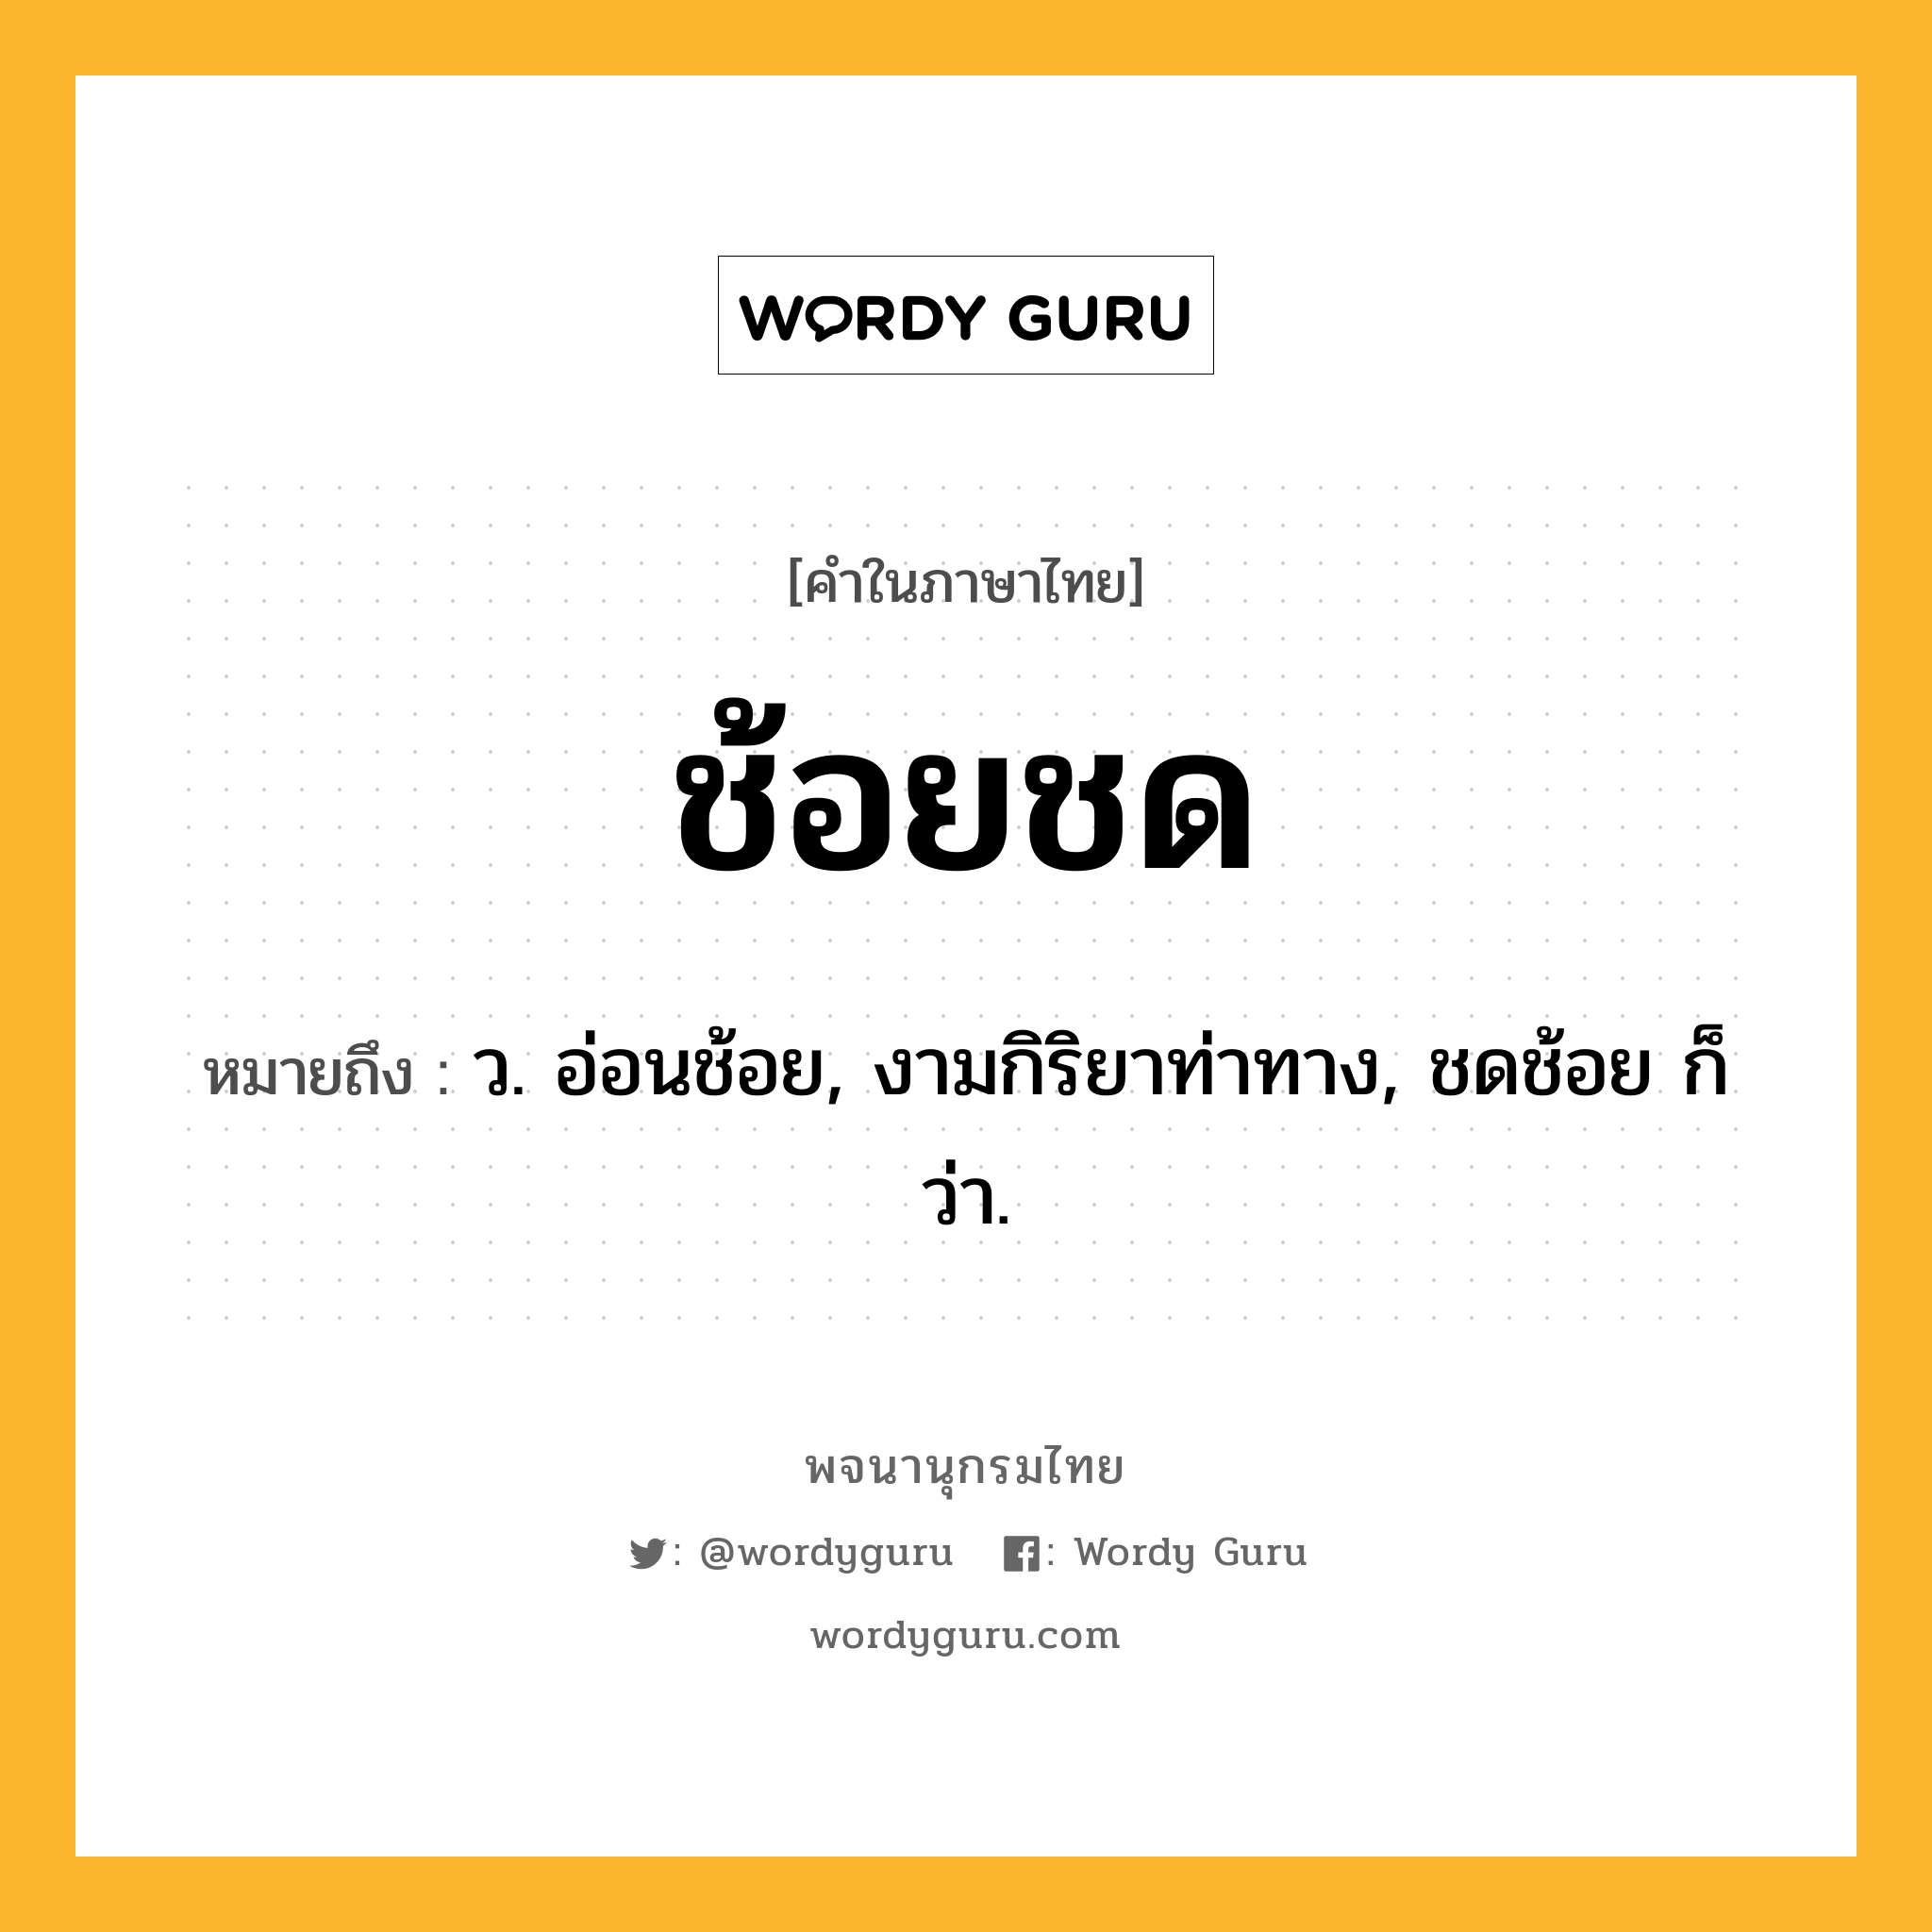 ช้อยชด หมายถึงอะไร?, คำในภาษาไทย ช้อยชด หมายถึง ว. อ่อนช้อย, งามกิริยาท่าทาง, ชดช้อย ก็ว่า.